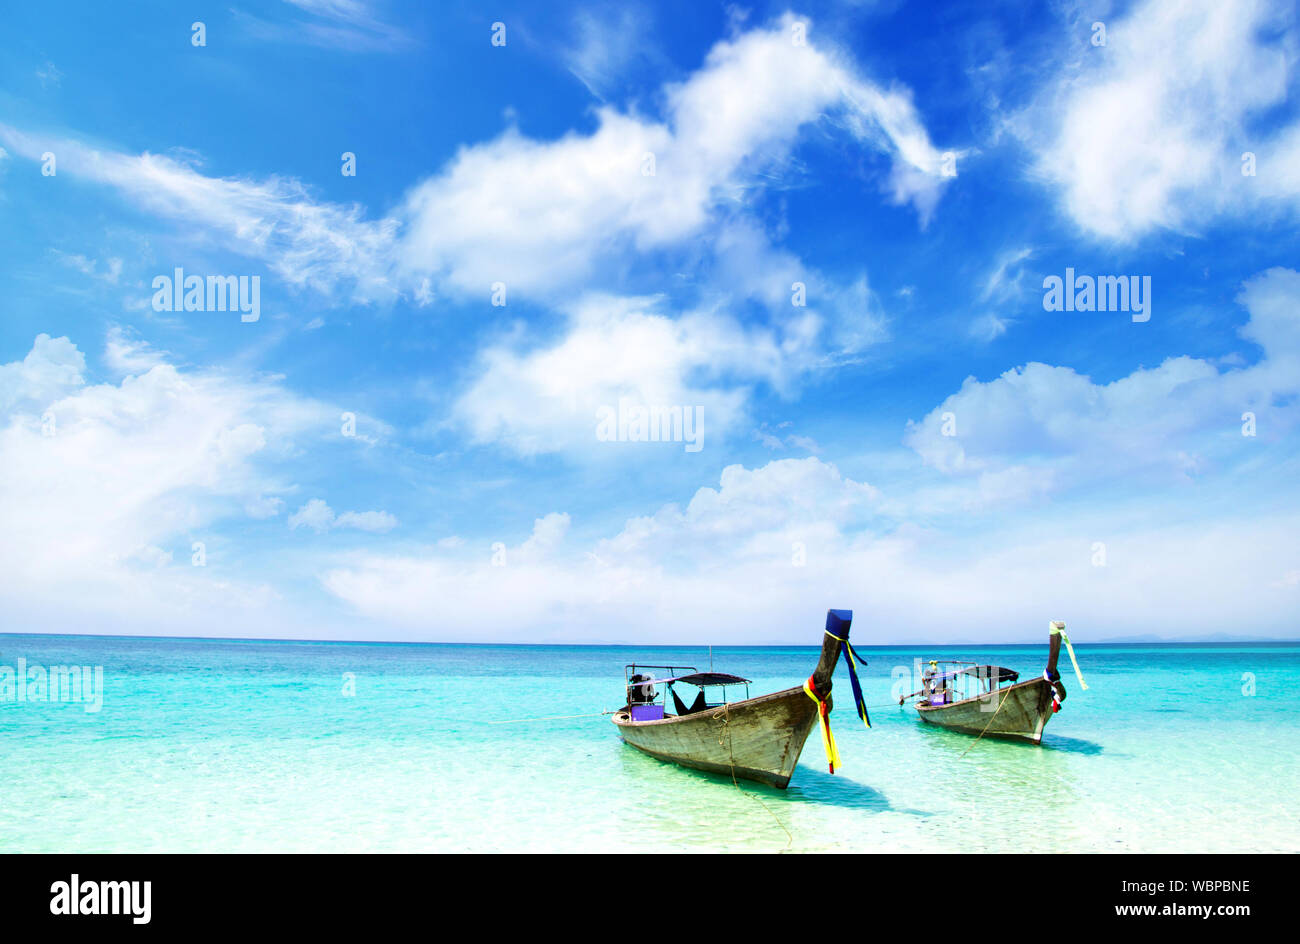 Thailand Beach Summer Background Stock Photo